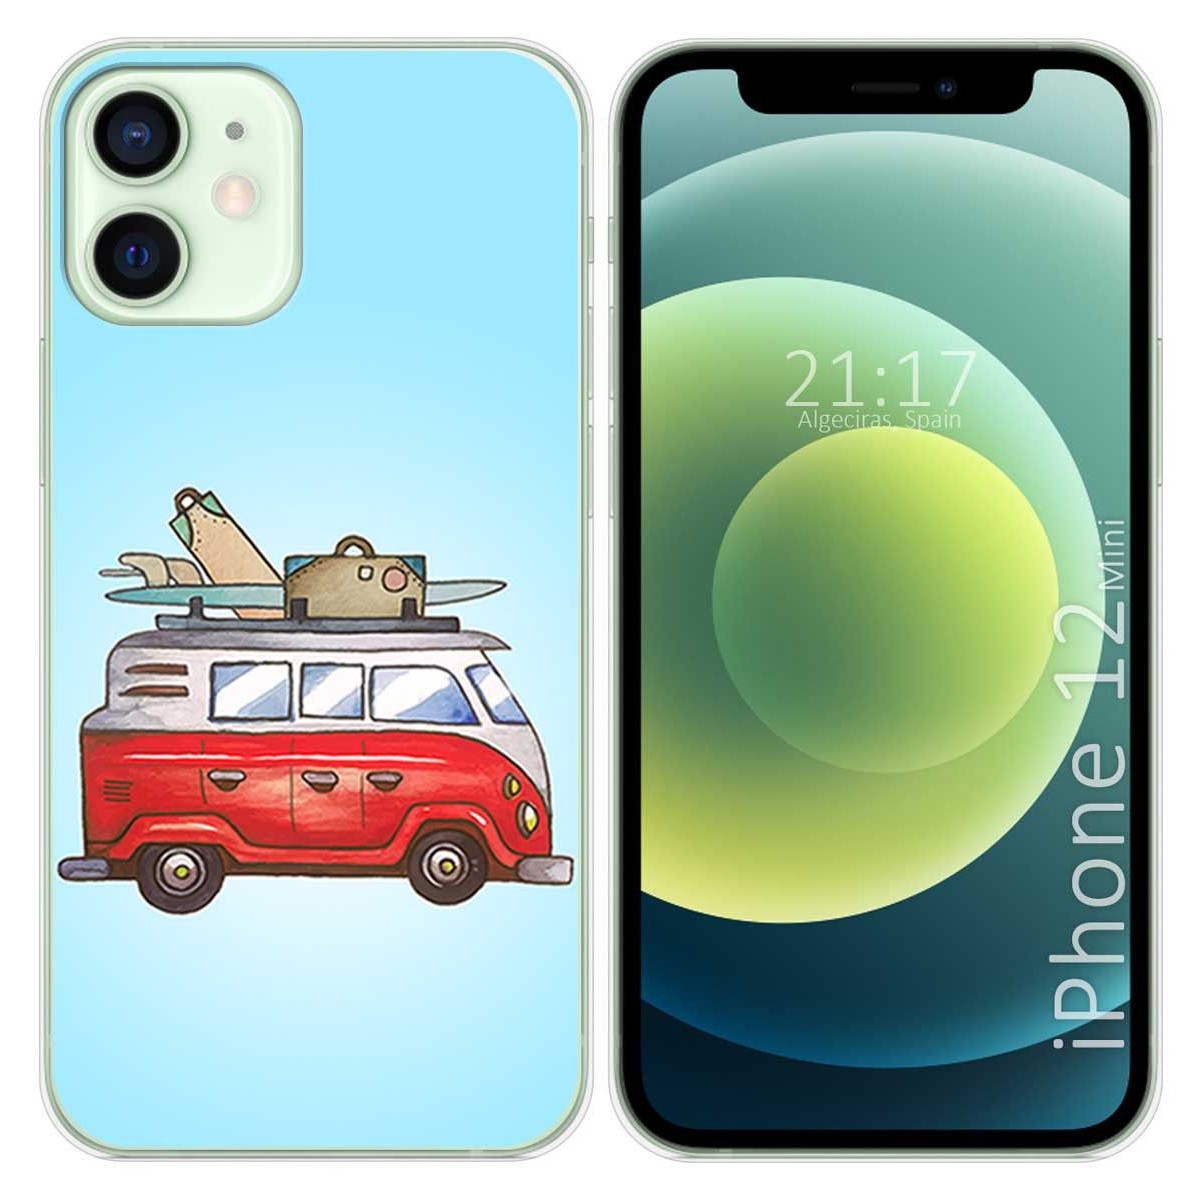 Funda iPhone 12 mini y 2 protectores de pantalla - Silicona - Verde